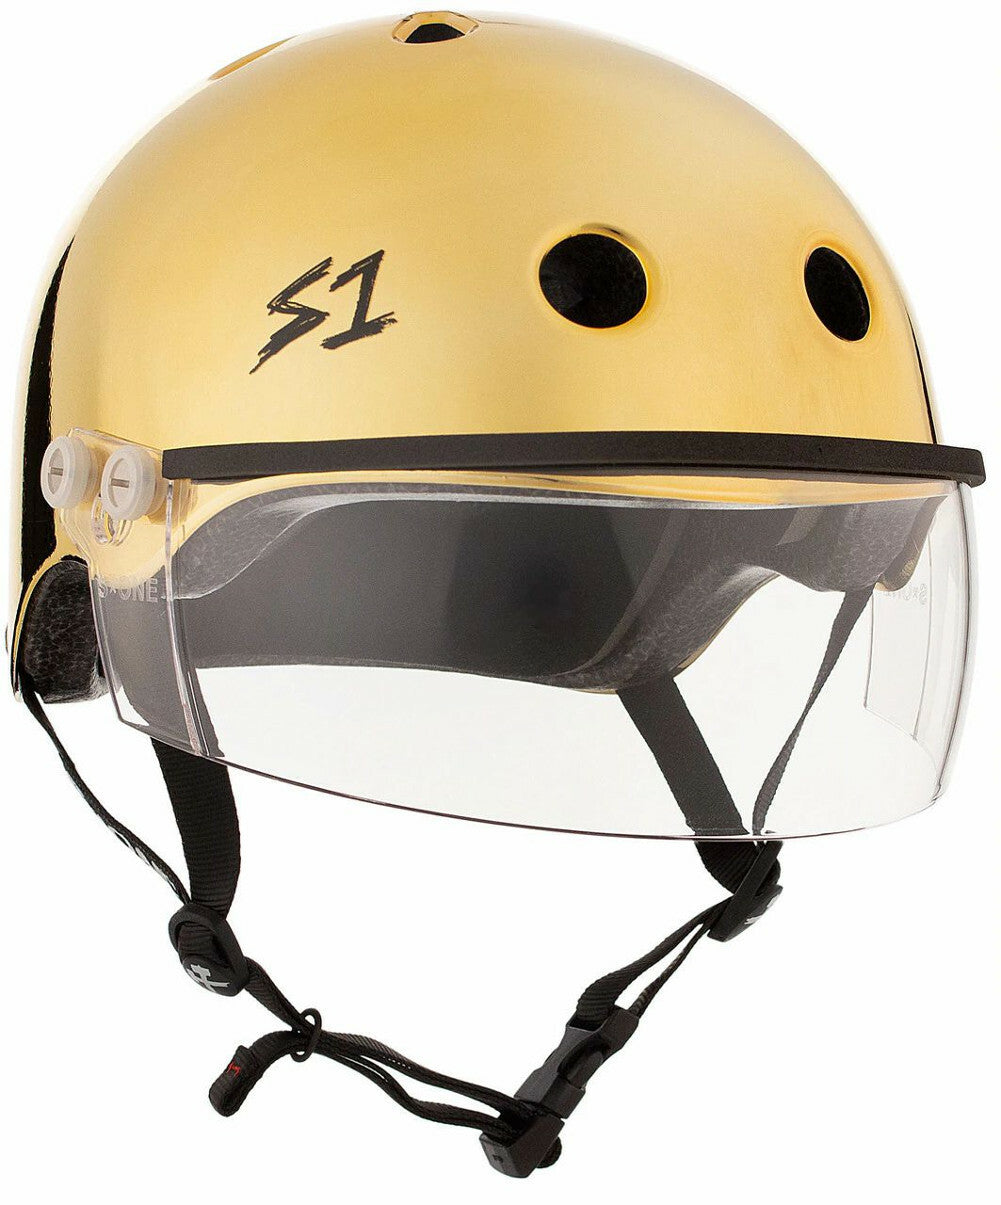 S1 Lifer Helmet w Visor